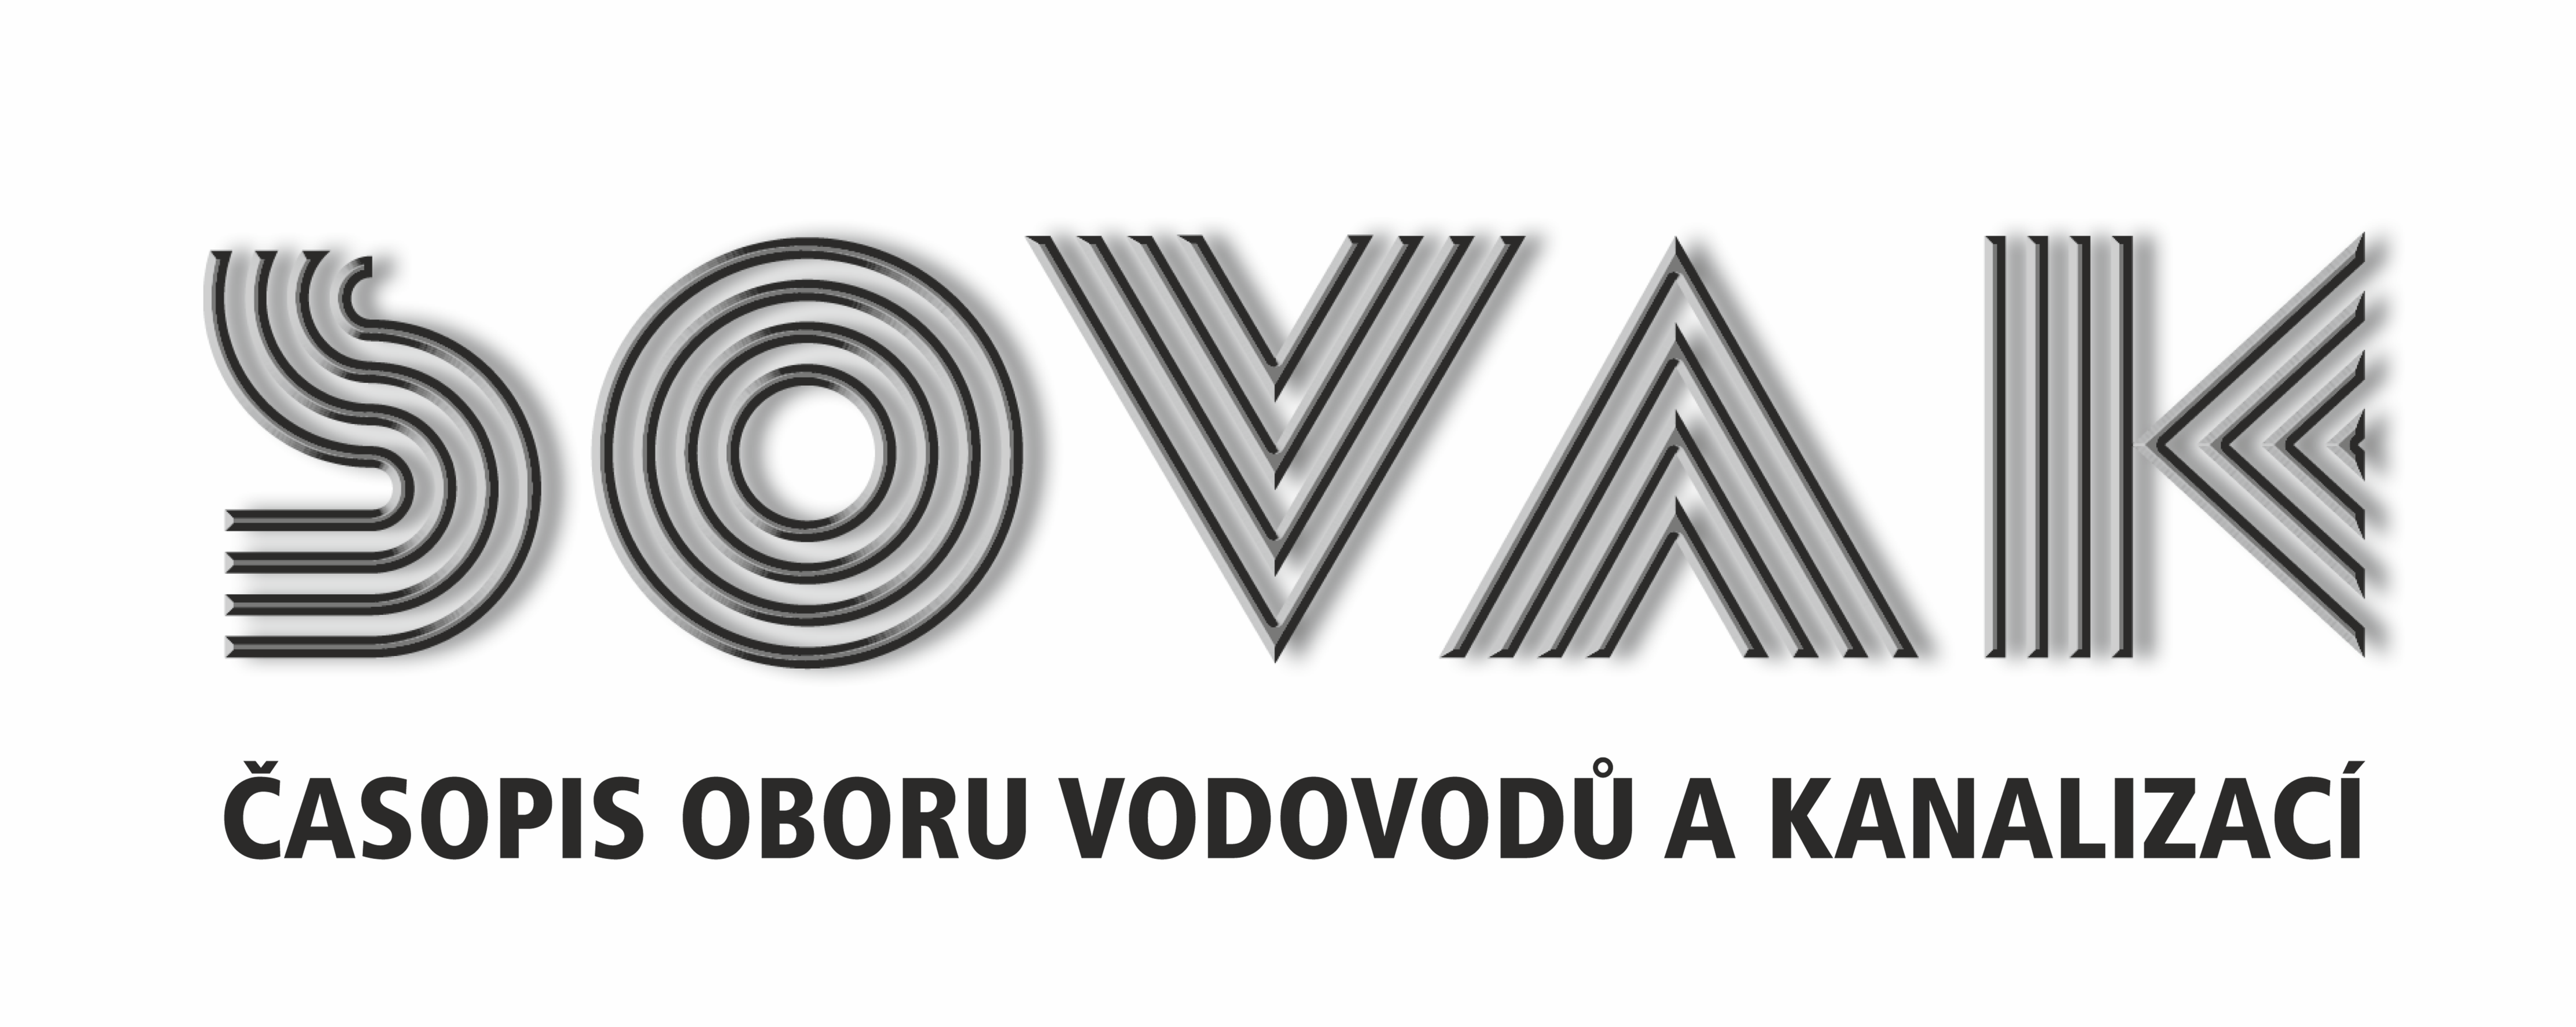 Logo časopisu Sovak